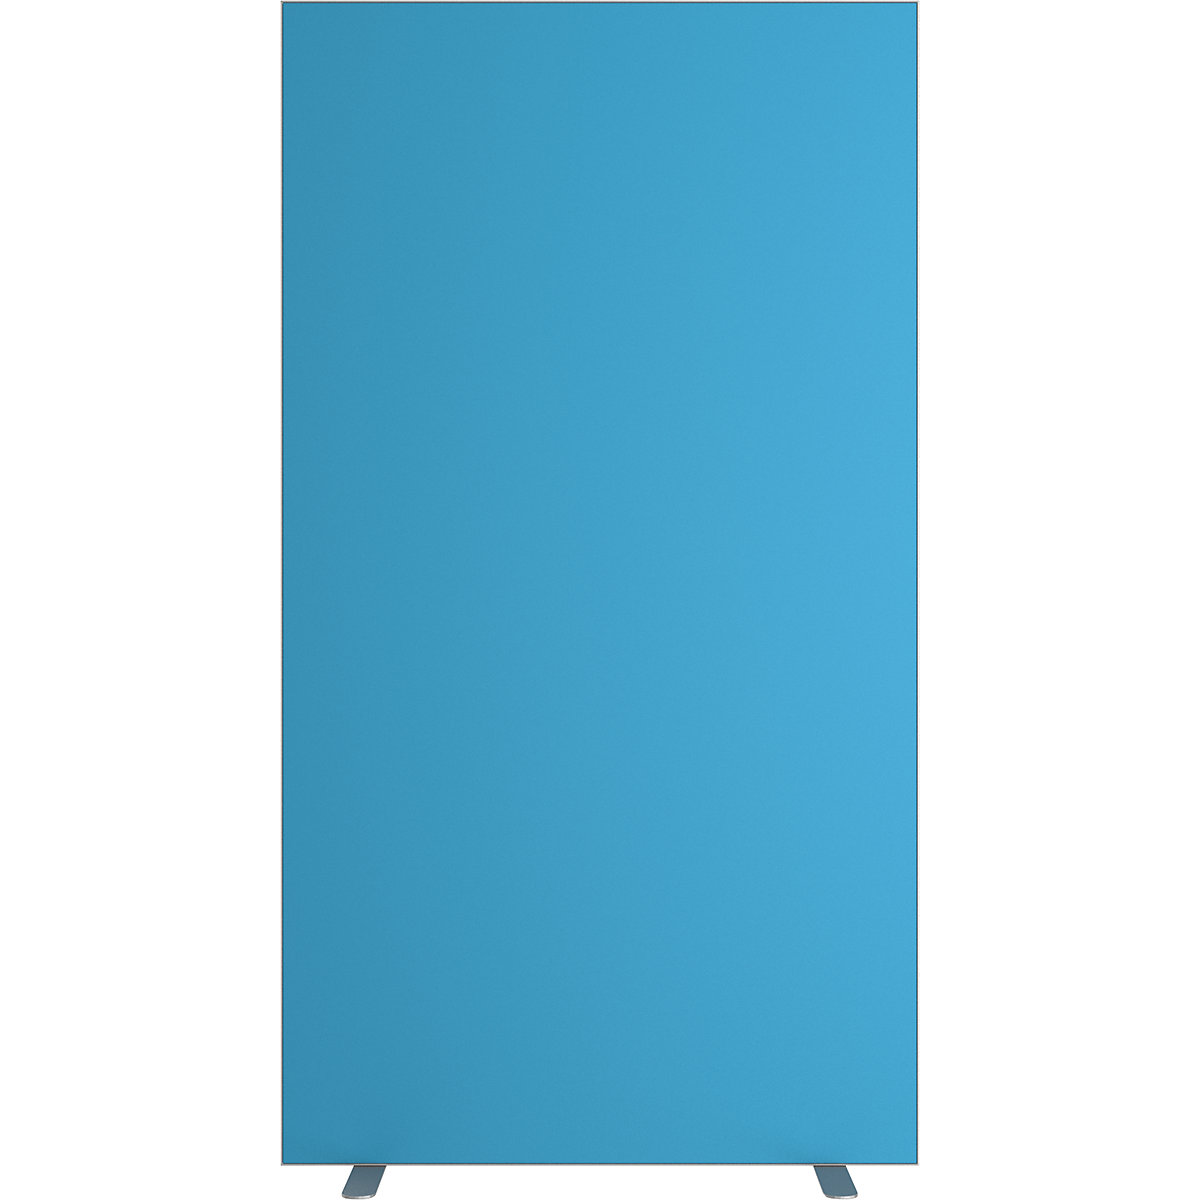 easyScreen válaszfal, egyszínű, kék, szélesség 940 mm-14